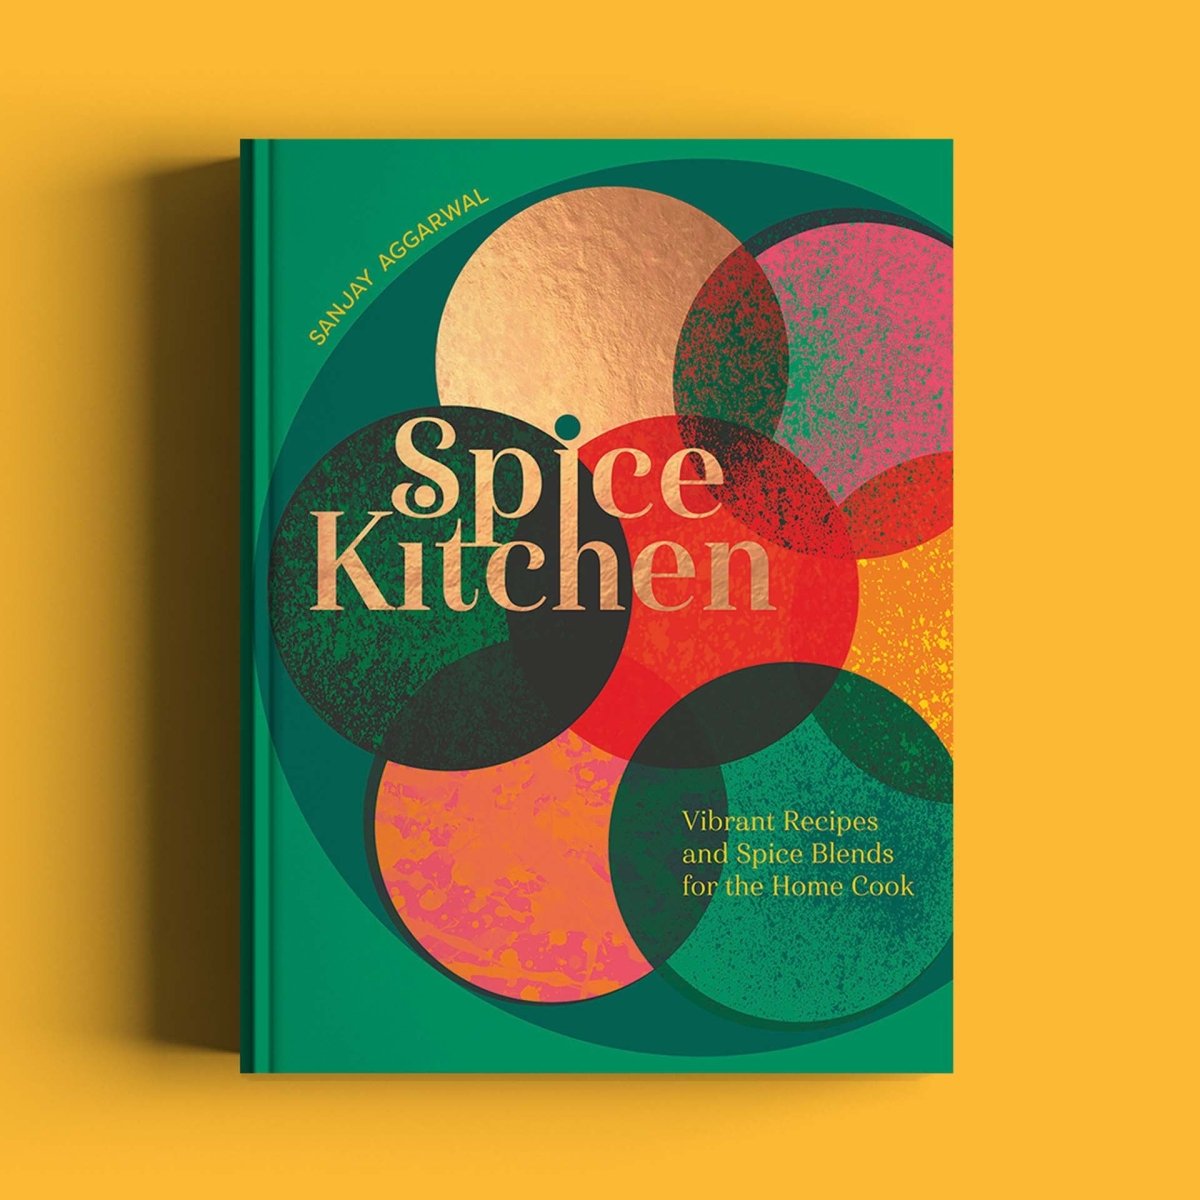 Spice Kitchen Cookbook